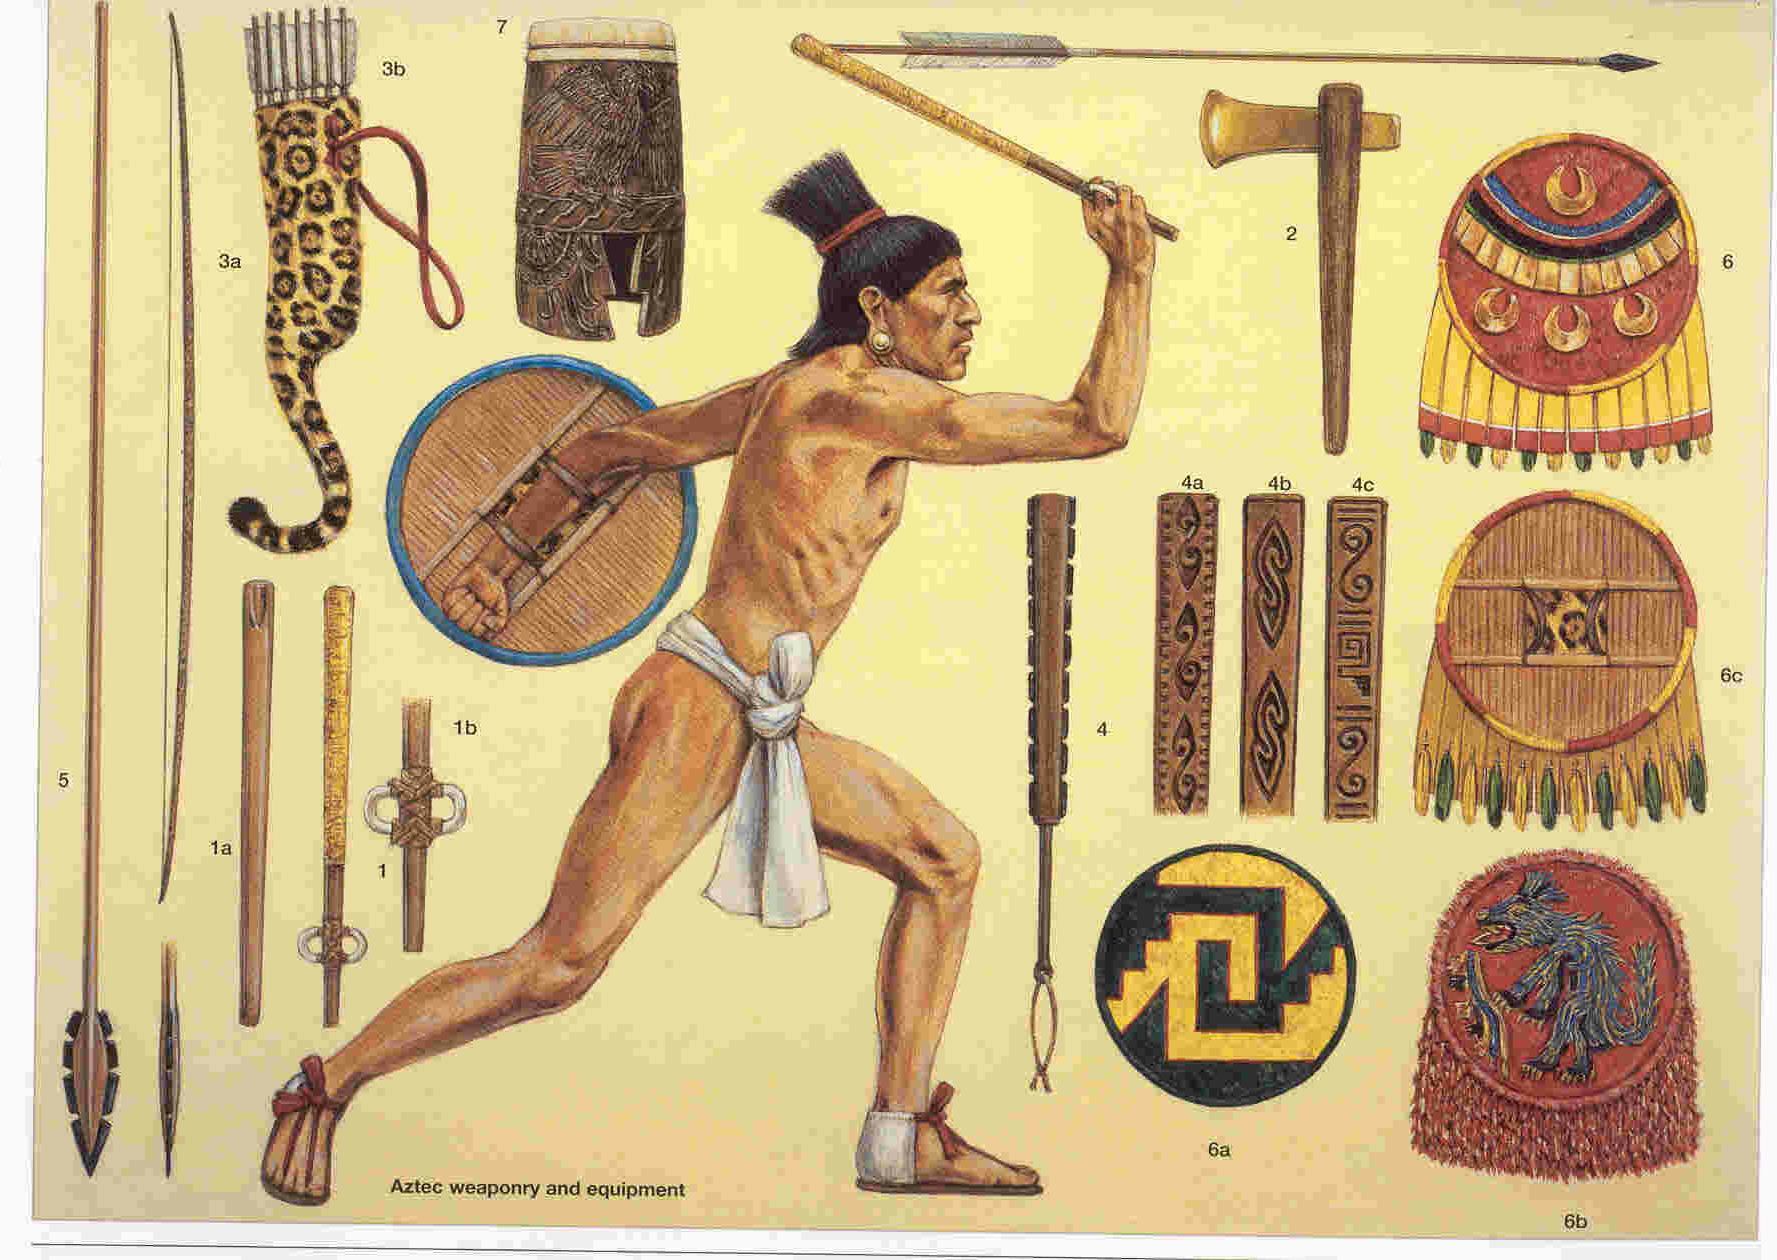 Resultado de imagen para aztecs